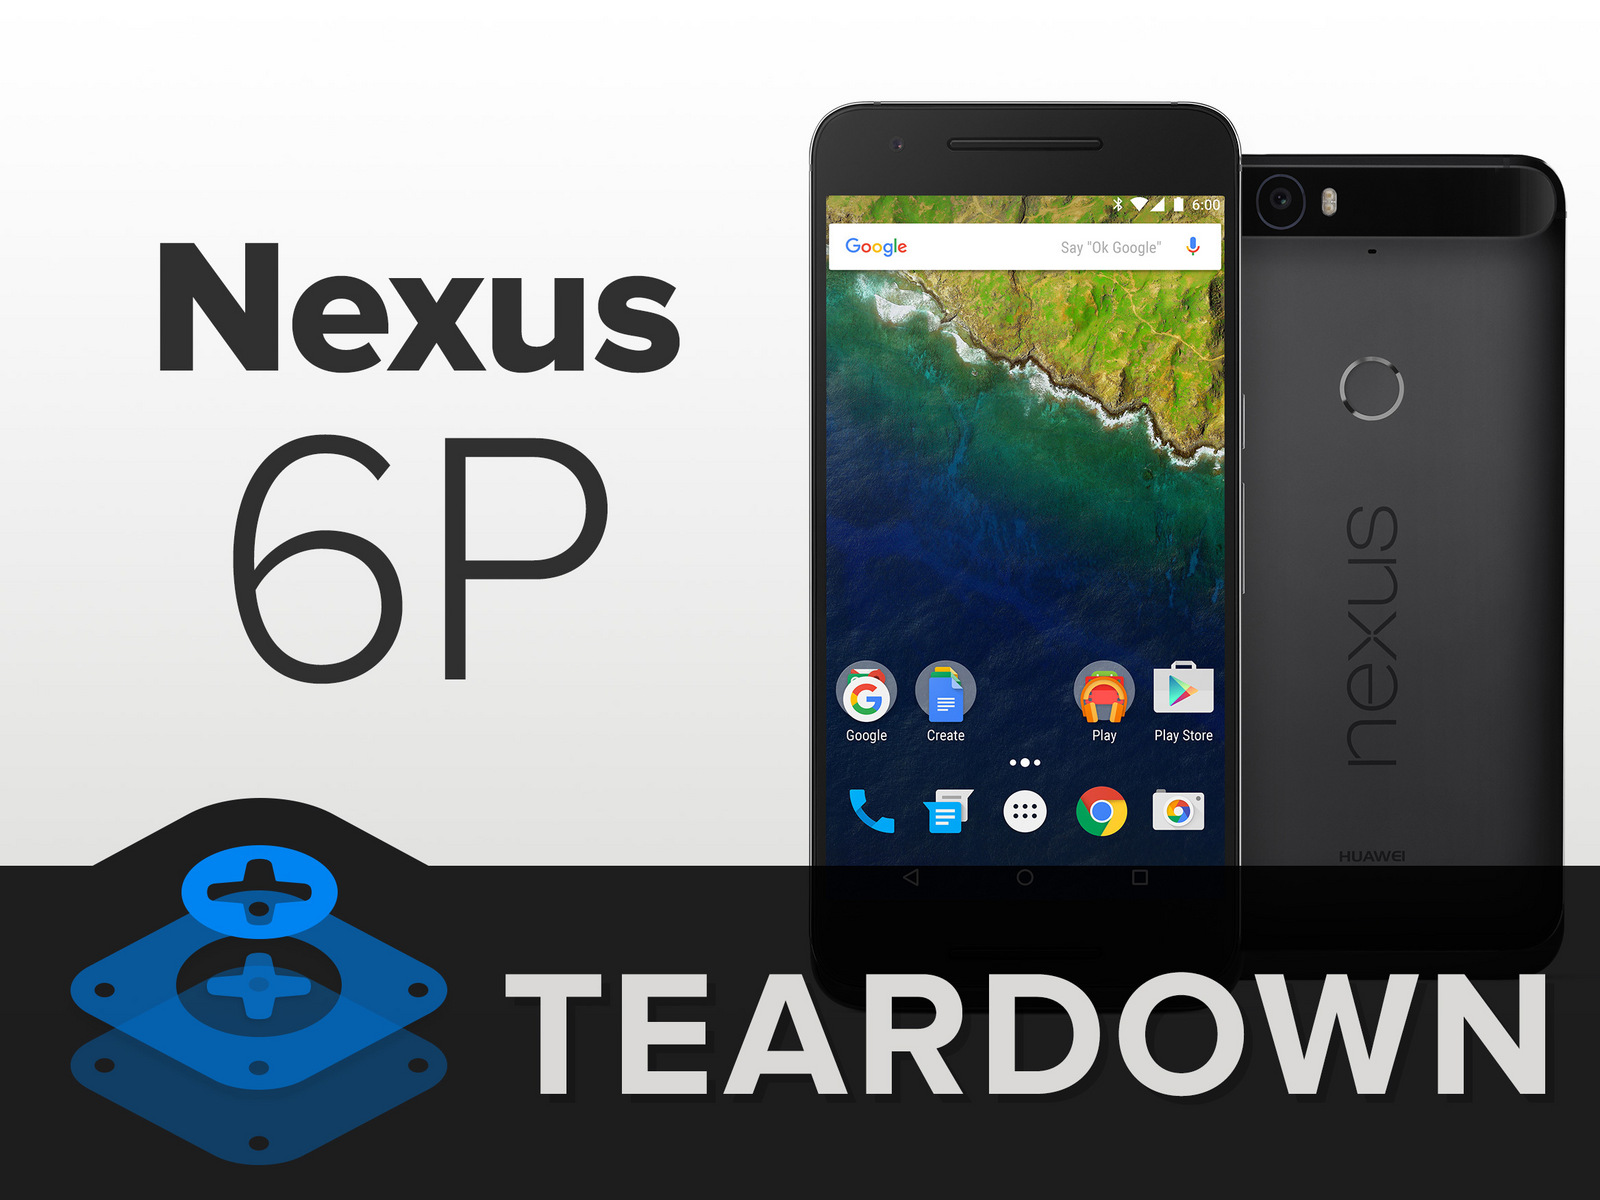 iFixit แยกชิ้นส่วน Nexus 6P พบแกะอย่างยาก งานนี้ใครจะซ่อม เตรียมหนาวได้เลย